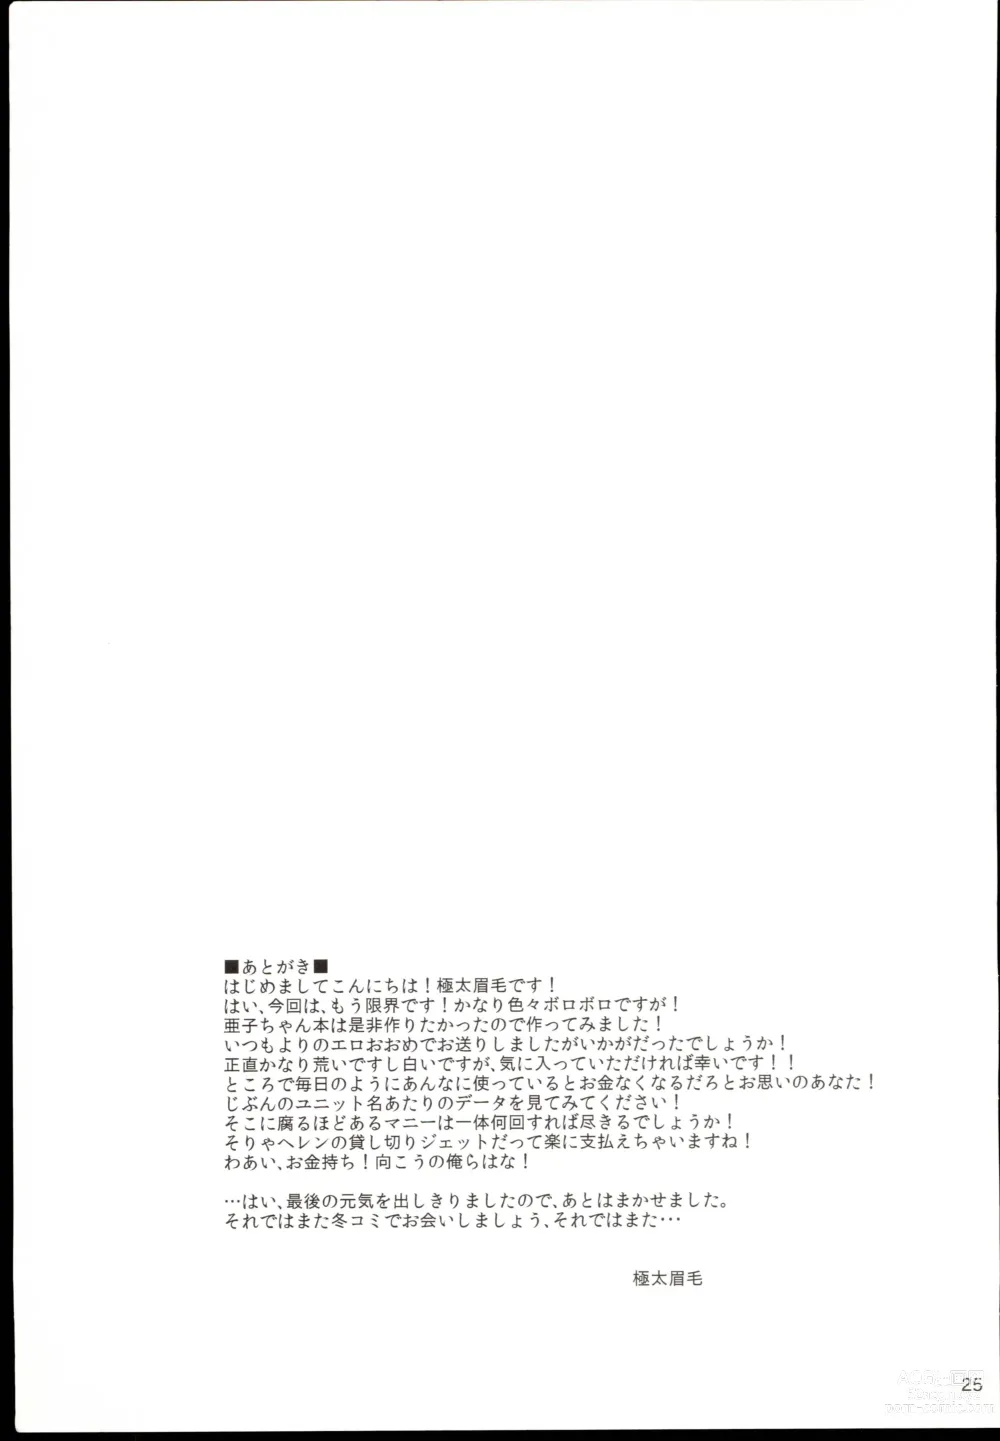 Page 25 of doujinshi Futari no Kankei.